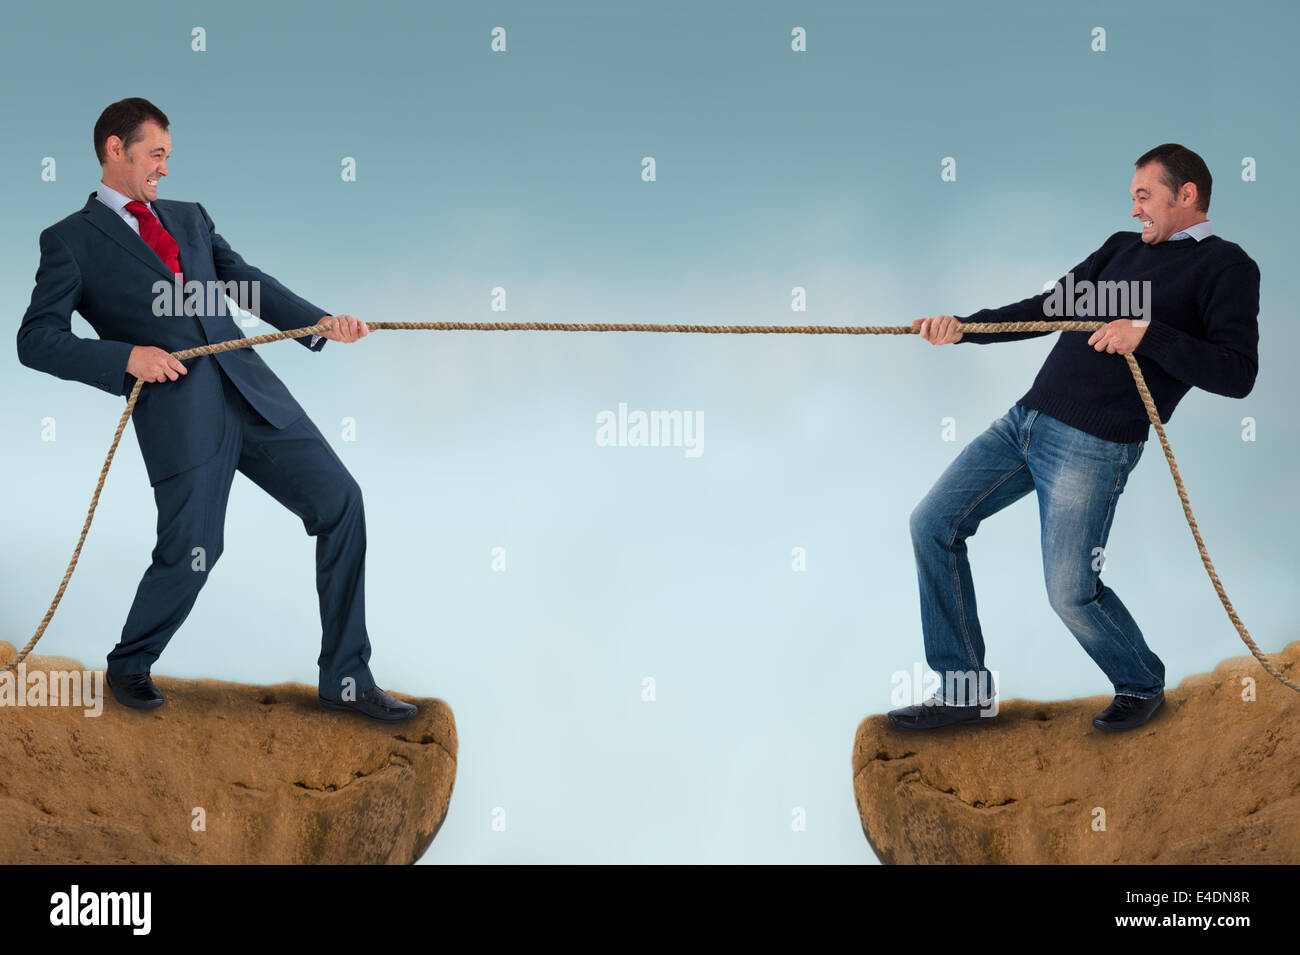 Rimorchiatore di guerra uomini tirando la corda sulla cima di una scogliera o crepaccio - work life balance concept Foto Stock